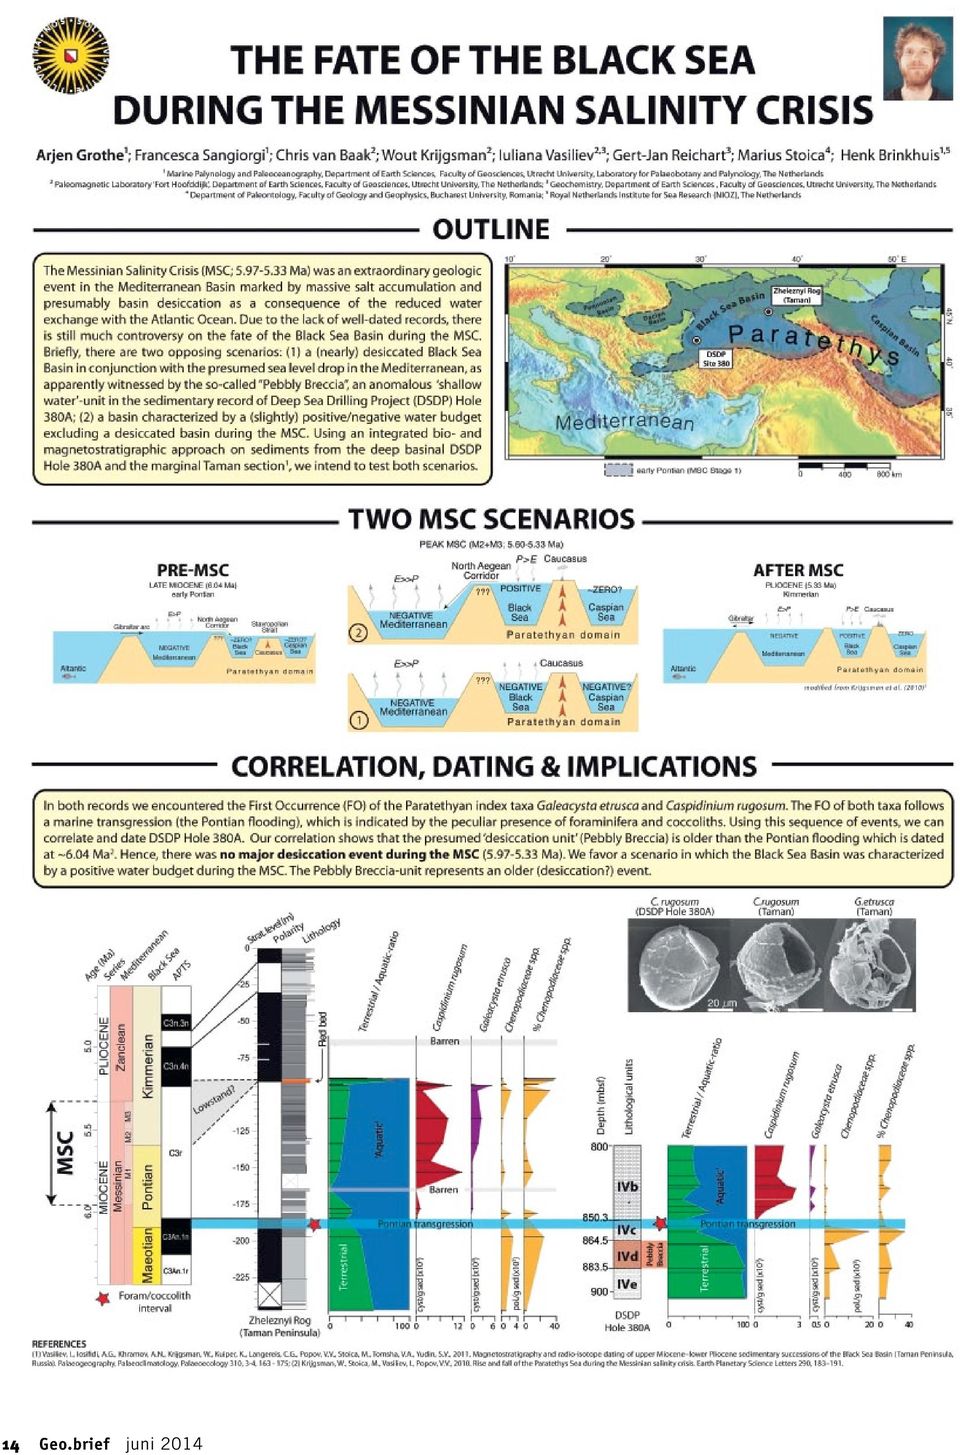 Hoe werkt radiometrische dating verschillen van de leeftijden van de geologic tijdschaal TABELA matchmaking WOT